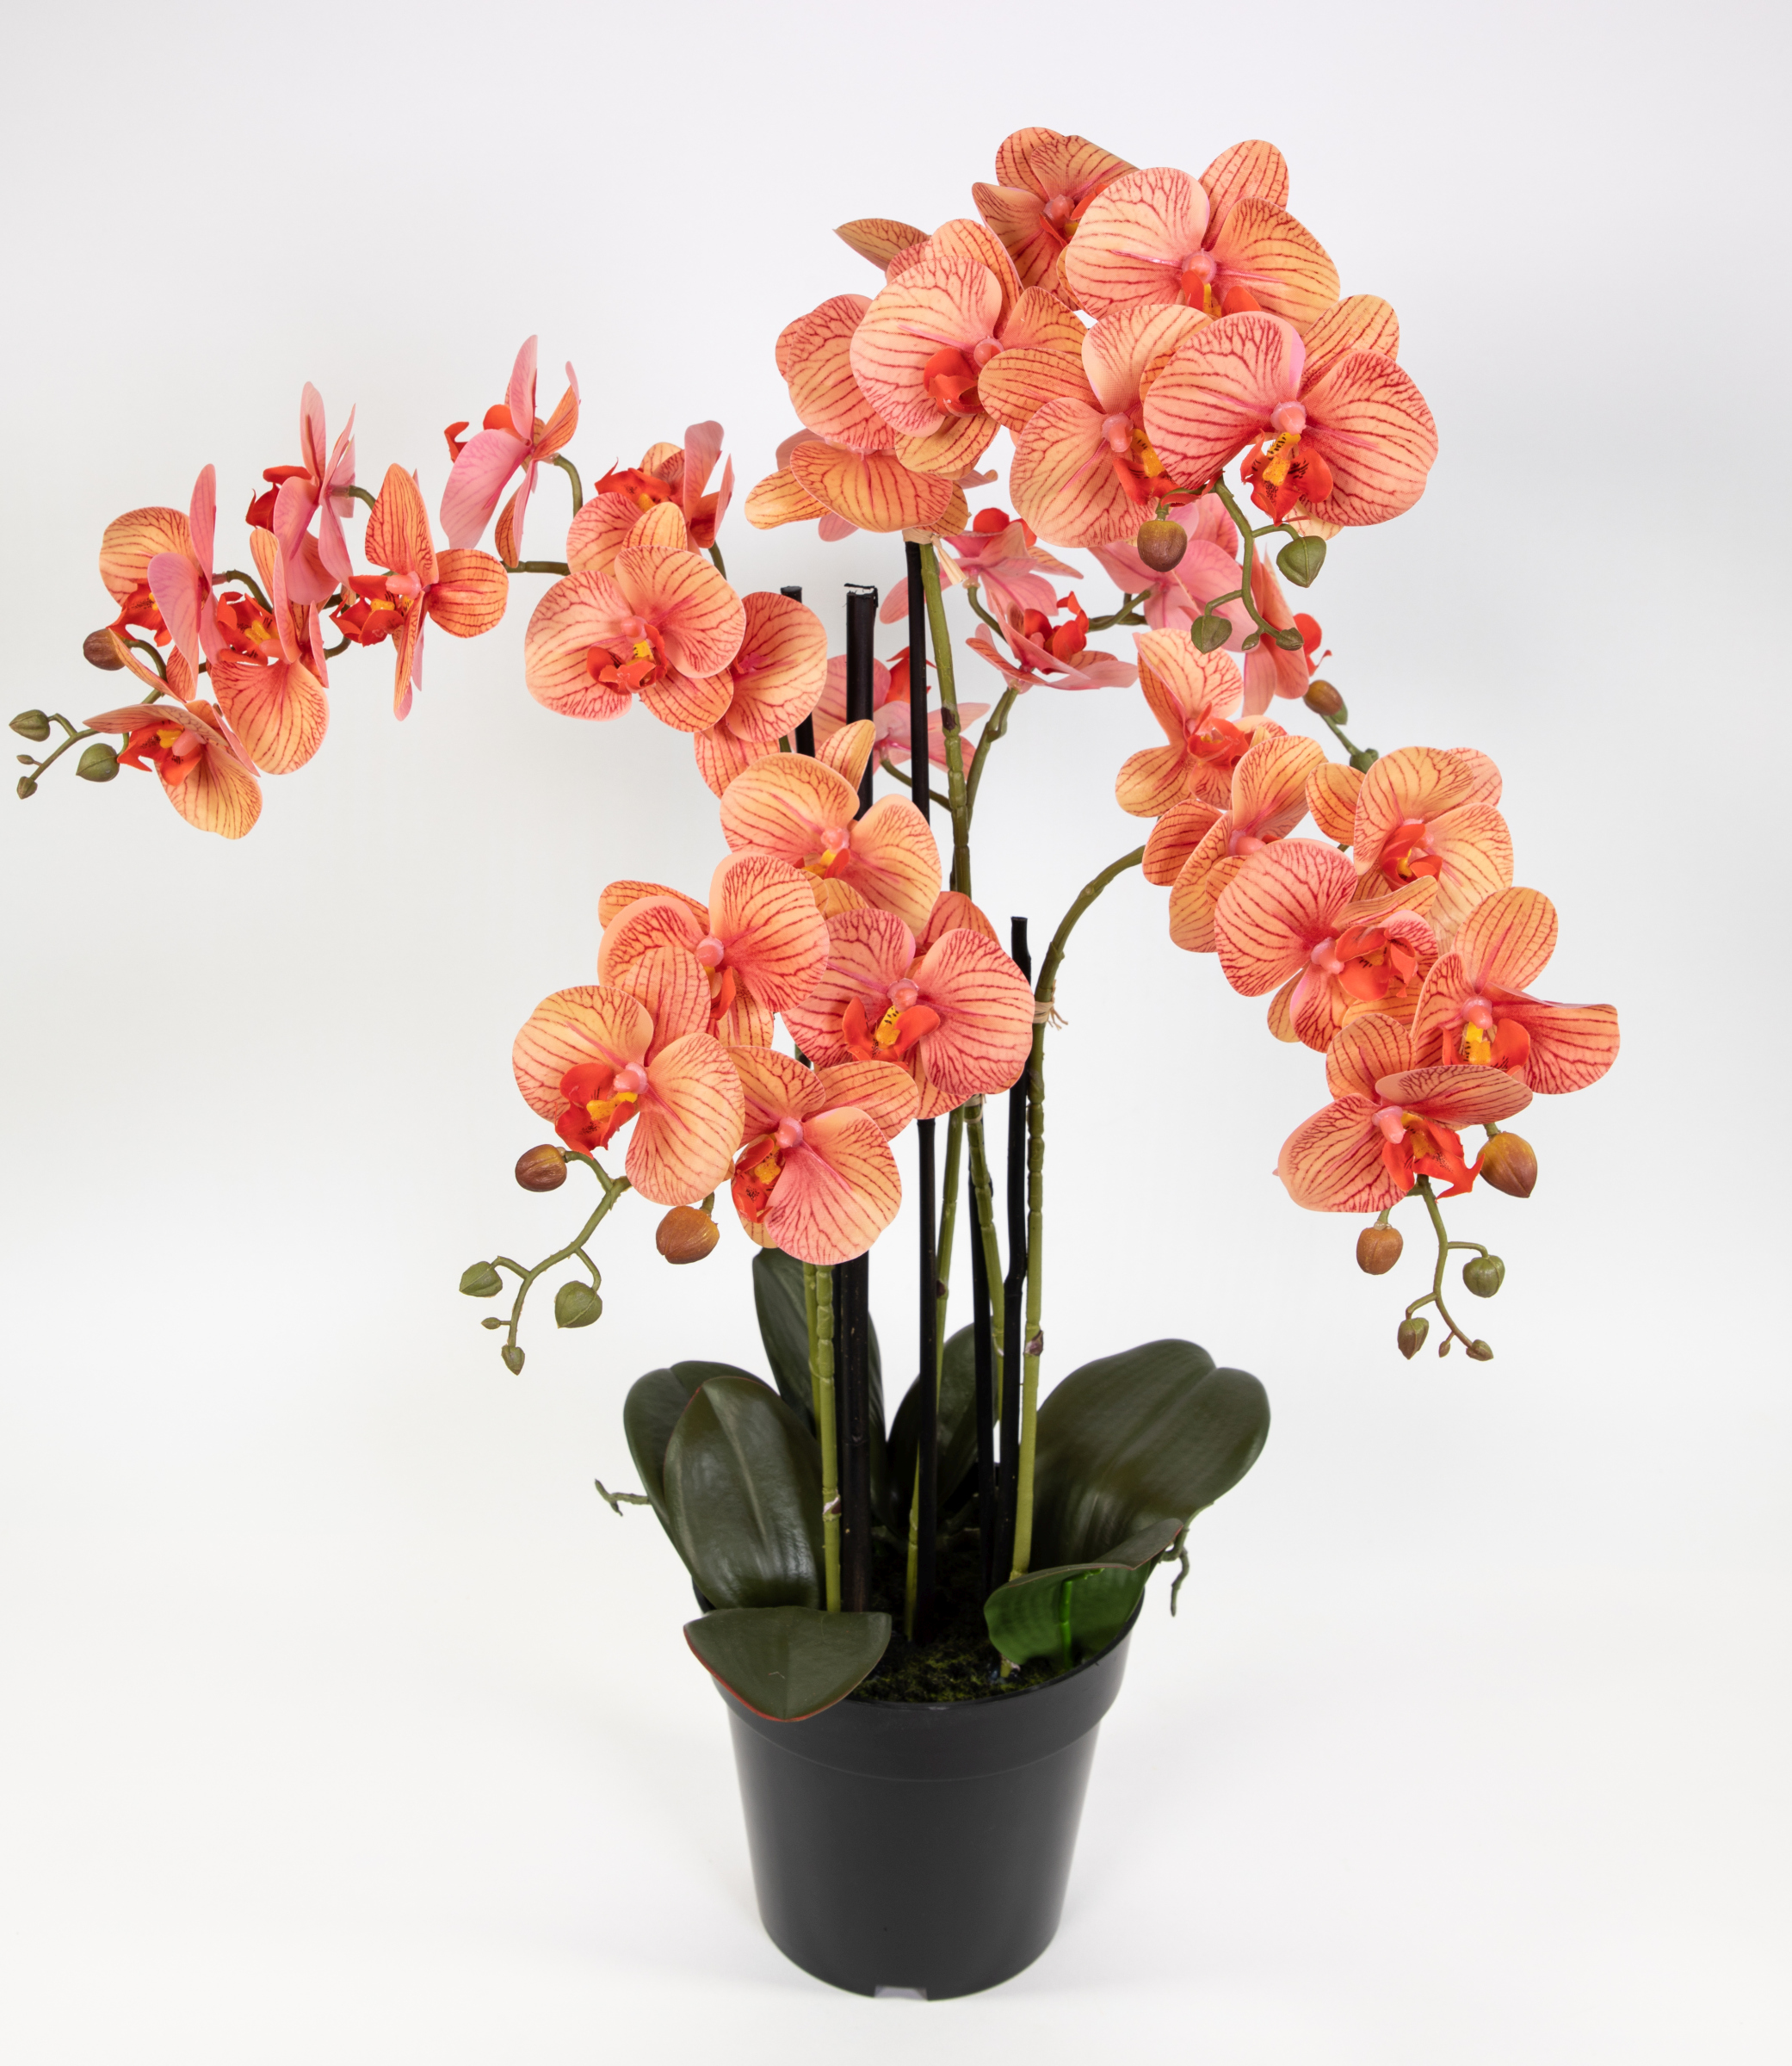 Orchidee 80x50cm Real Touch orange-peach CG künstliche Orchideen Blumen Kunstpflanzen Kunstblumen